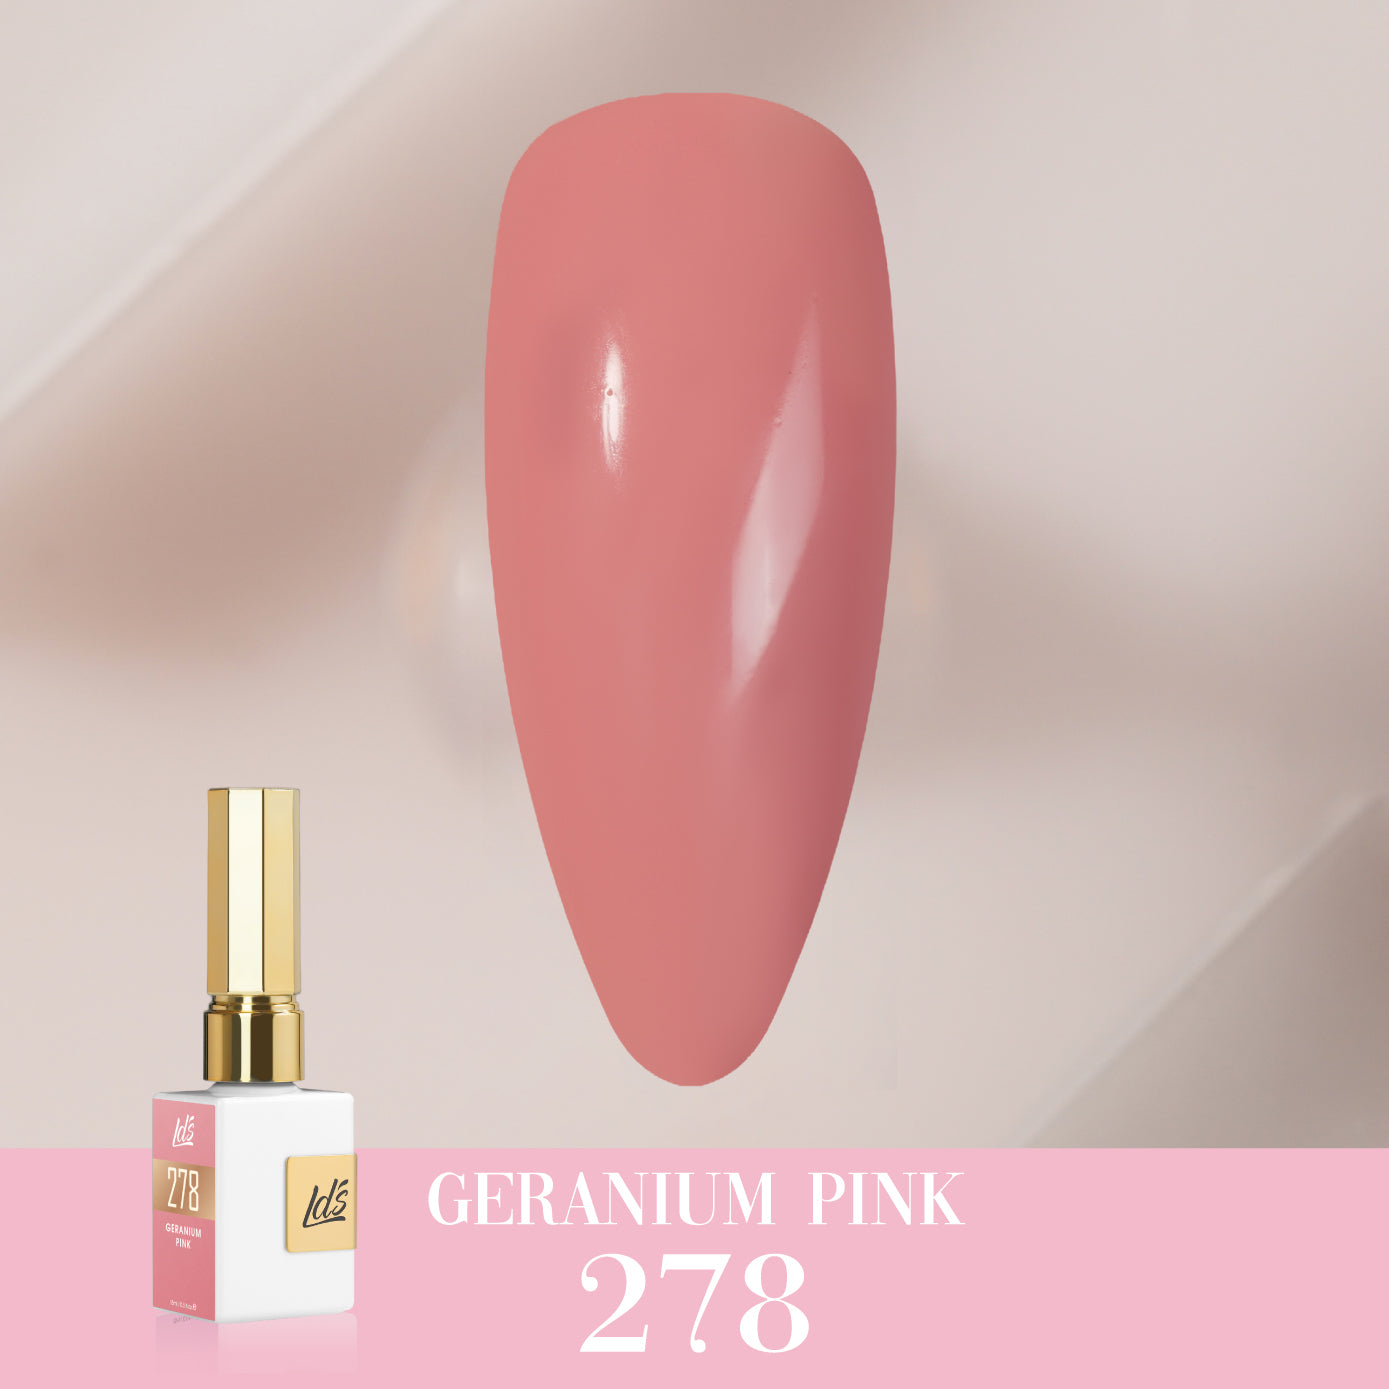 LDS Color Craze Collection - 278 Geranium Pink - Gel Polish 0.5oz